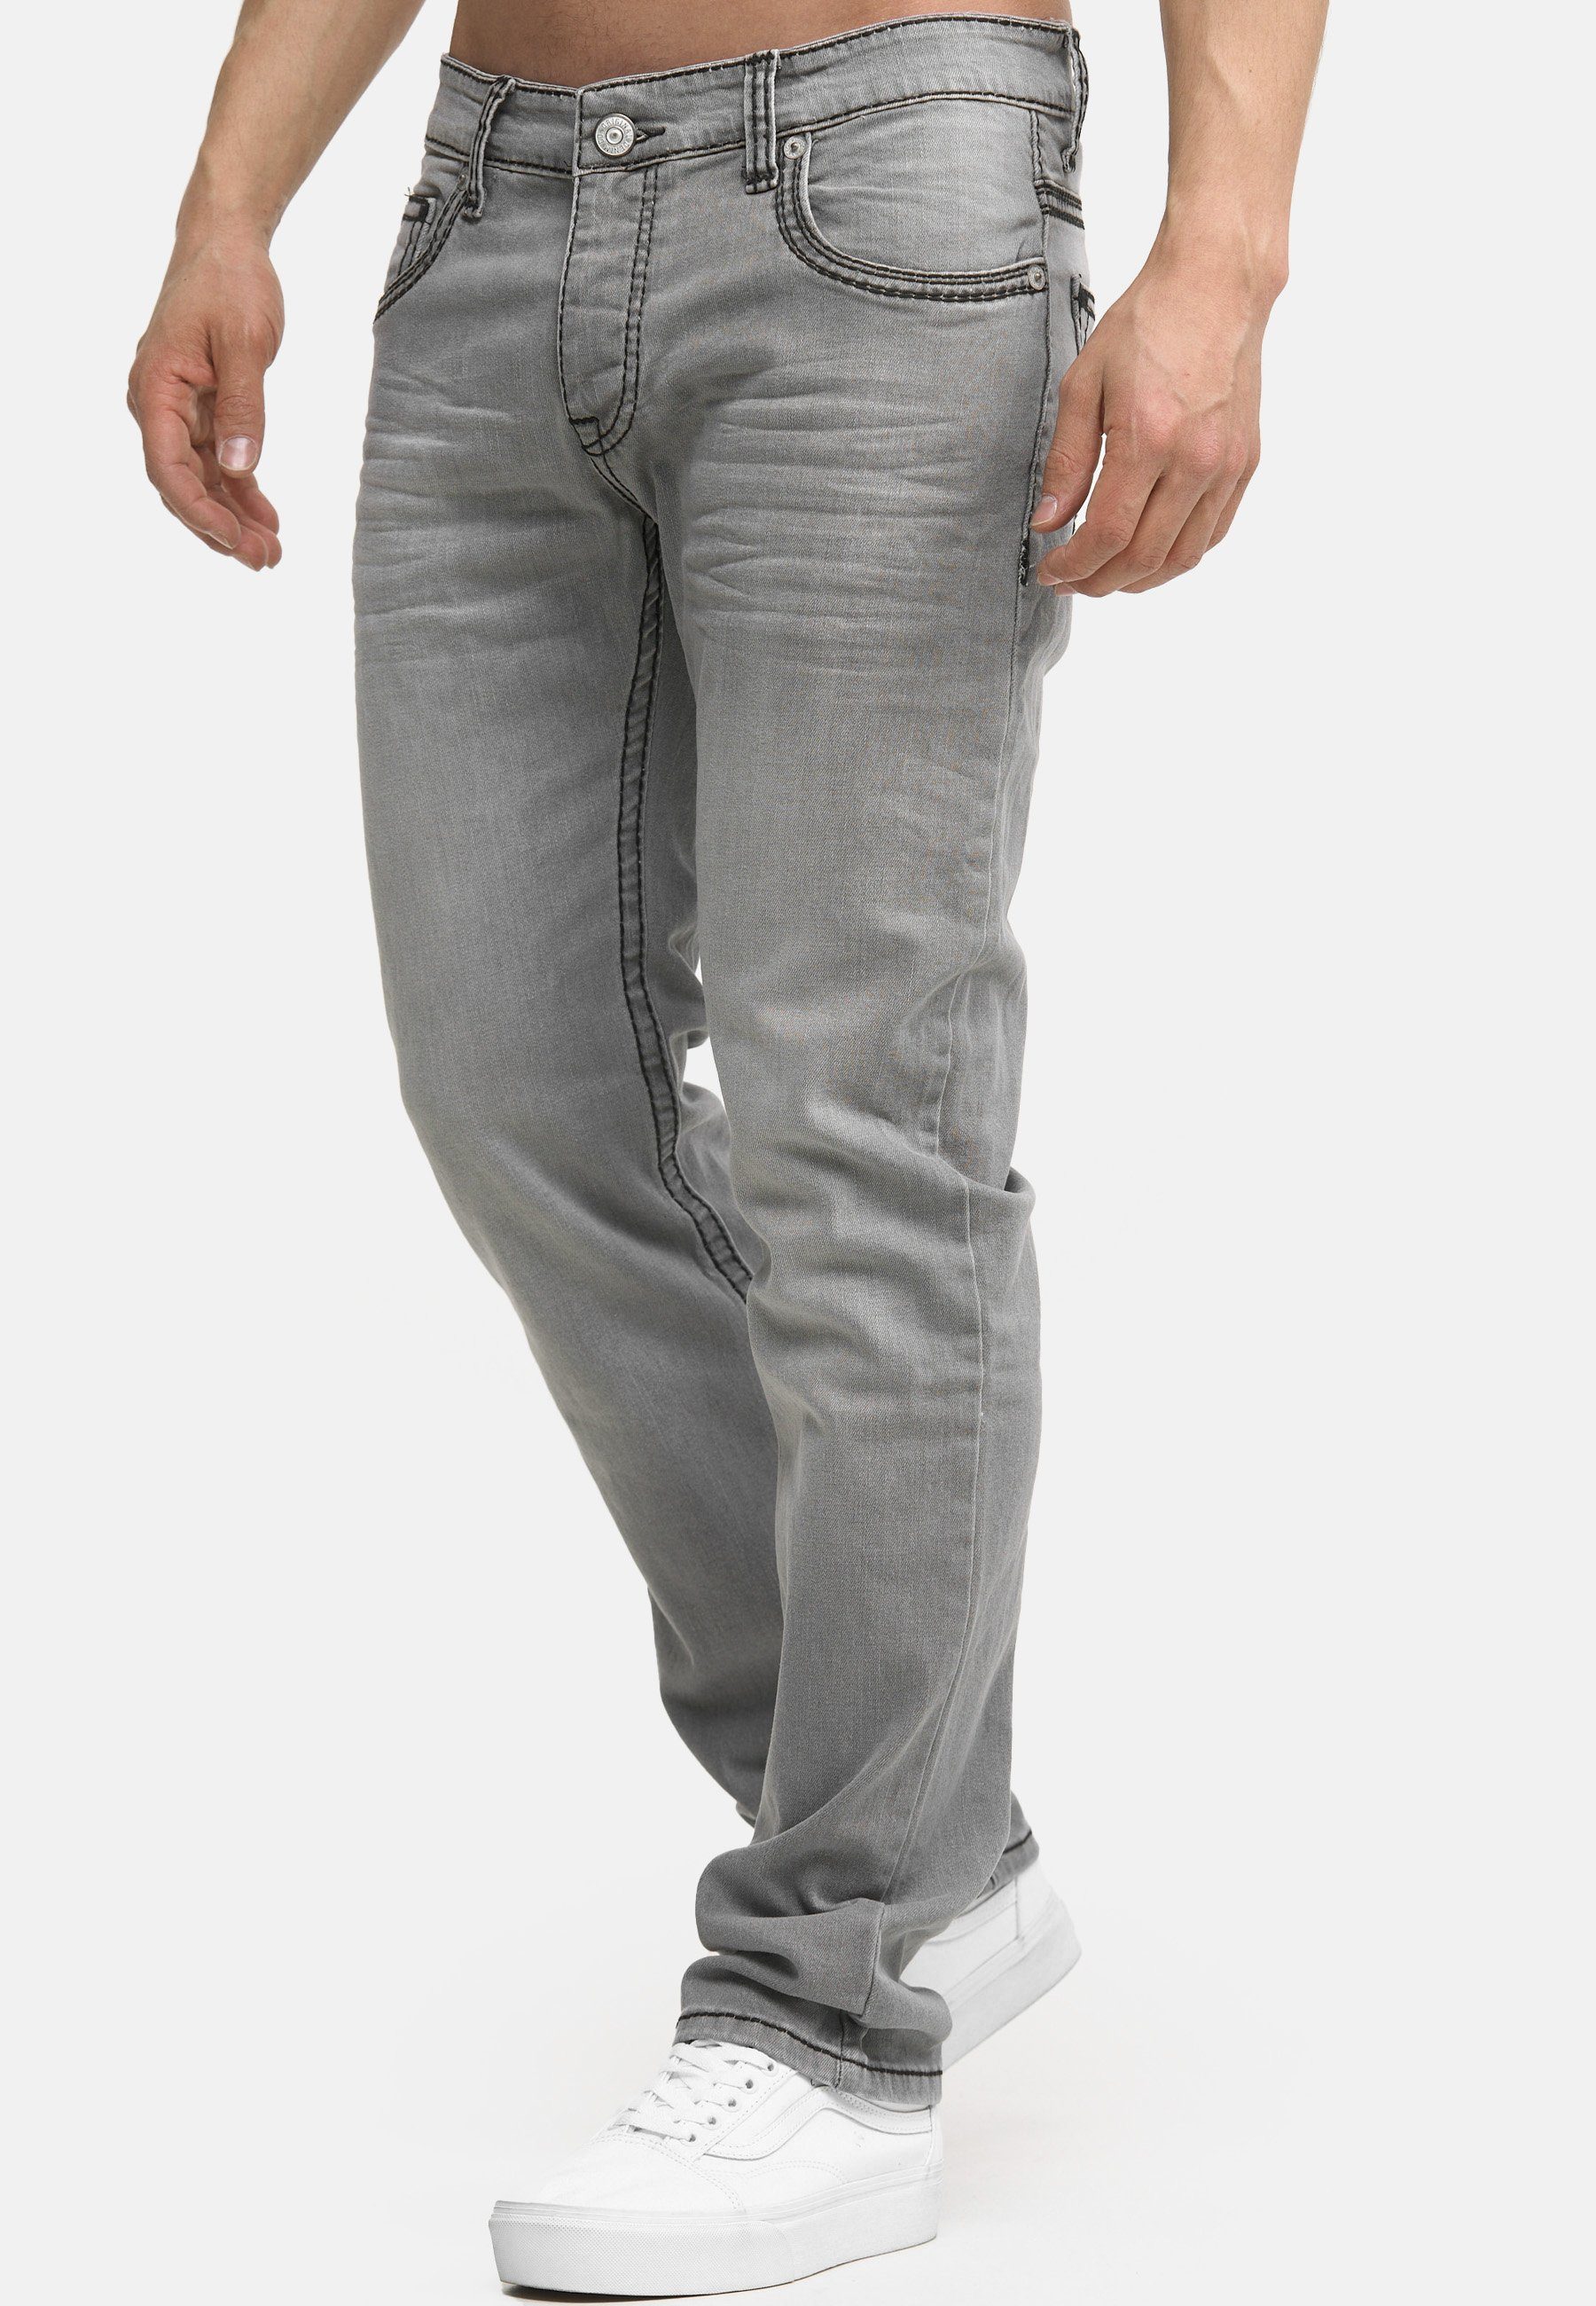 Code47 Five Fit Männer Regular-fit-Jeans grey Pocket Regular Code47 903 Denim Jeans Herren Hose Bootcut